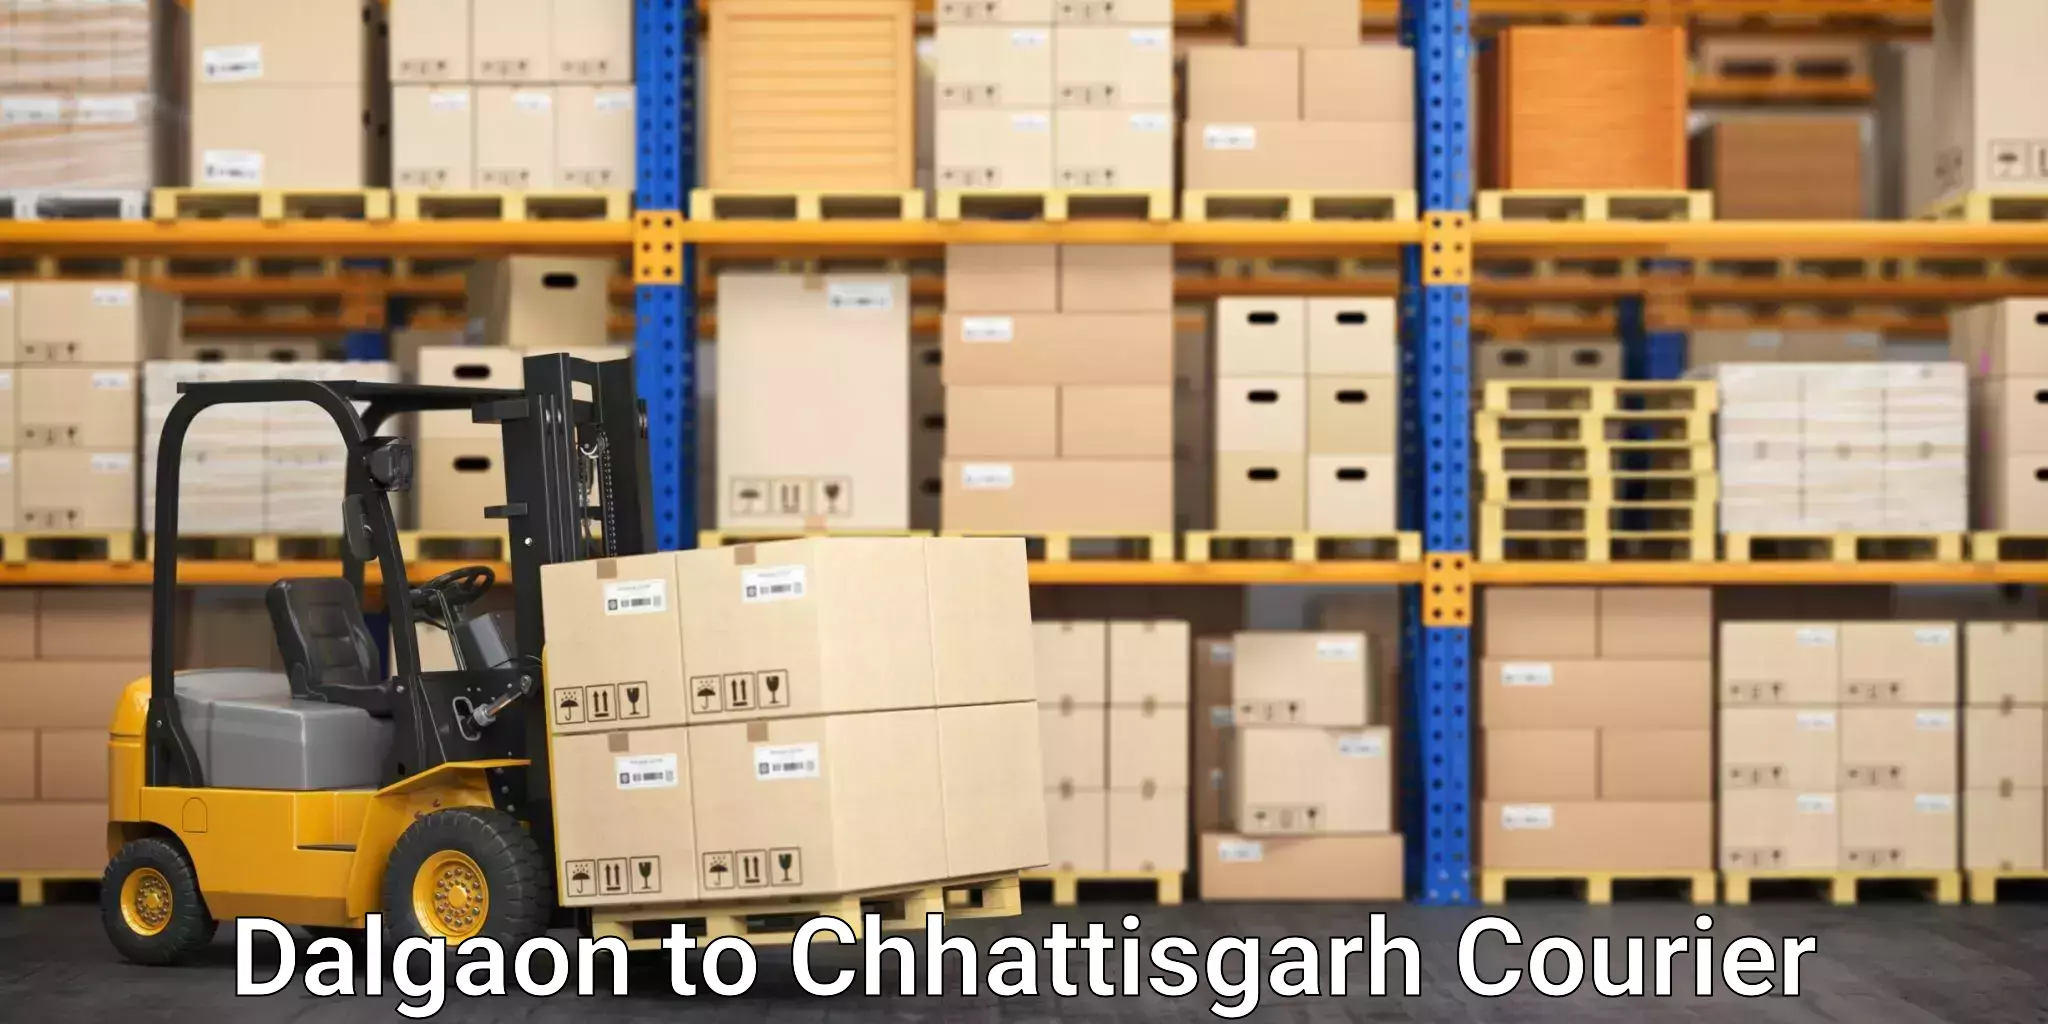 Cash on delivery service Dalgaon to Chhattisgarh